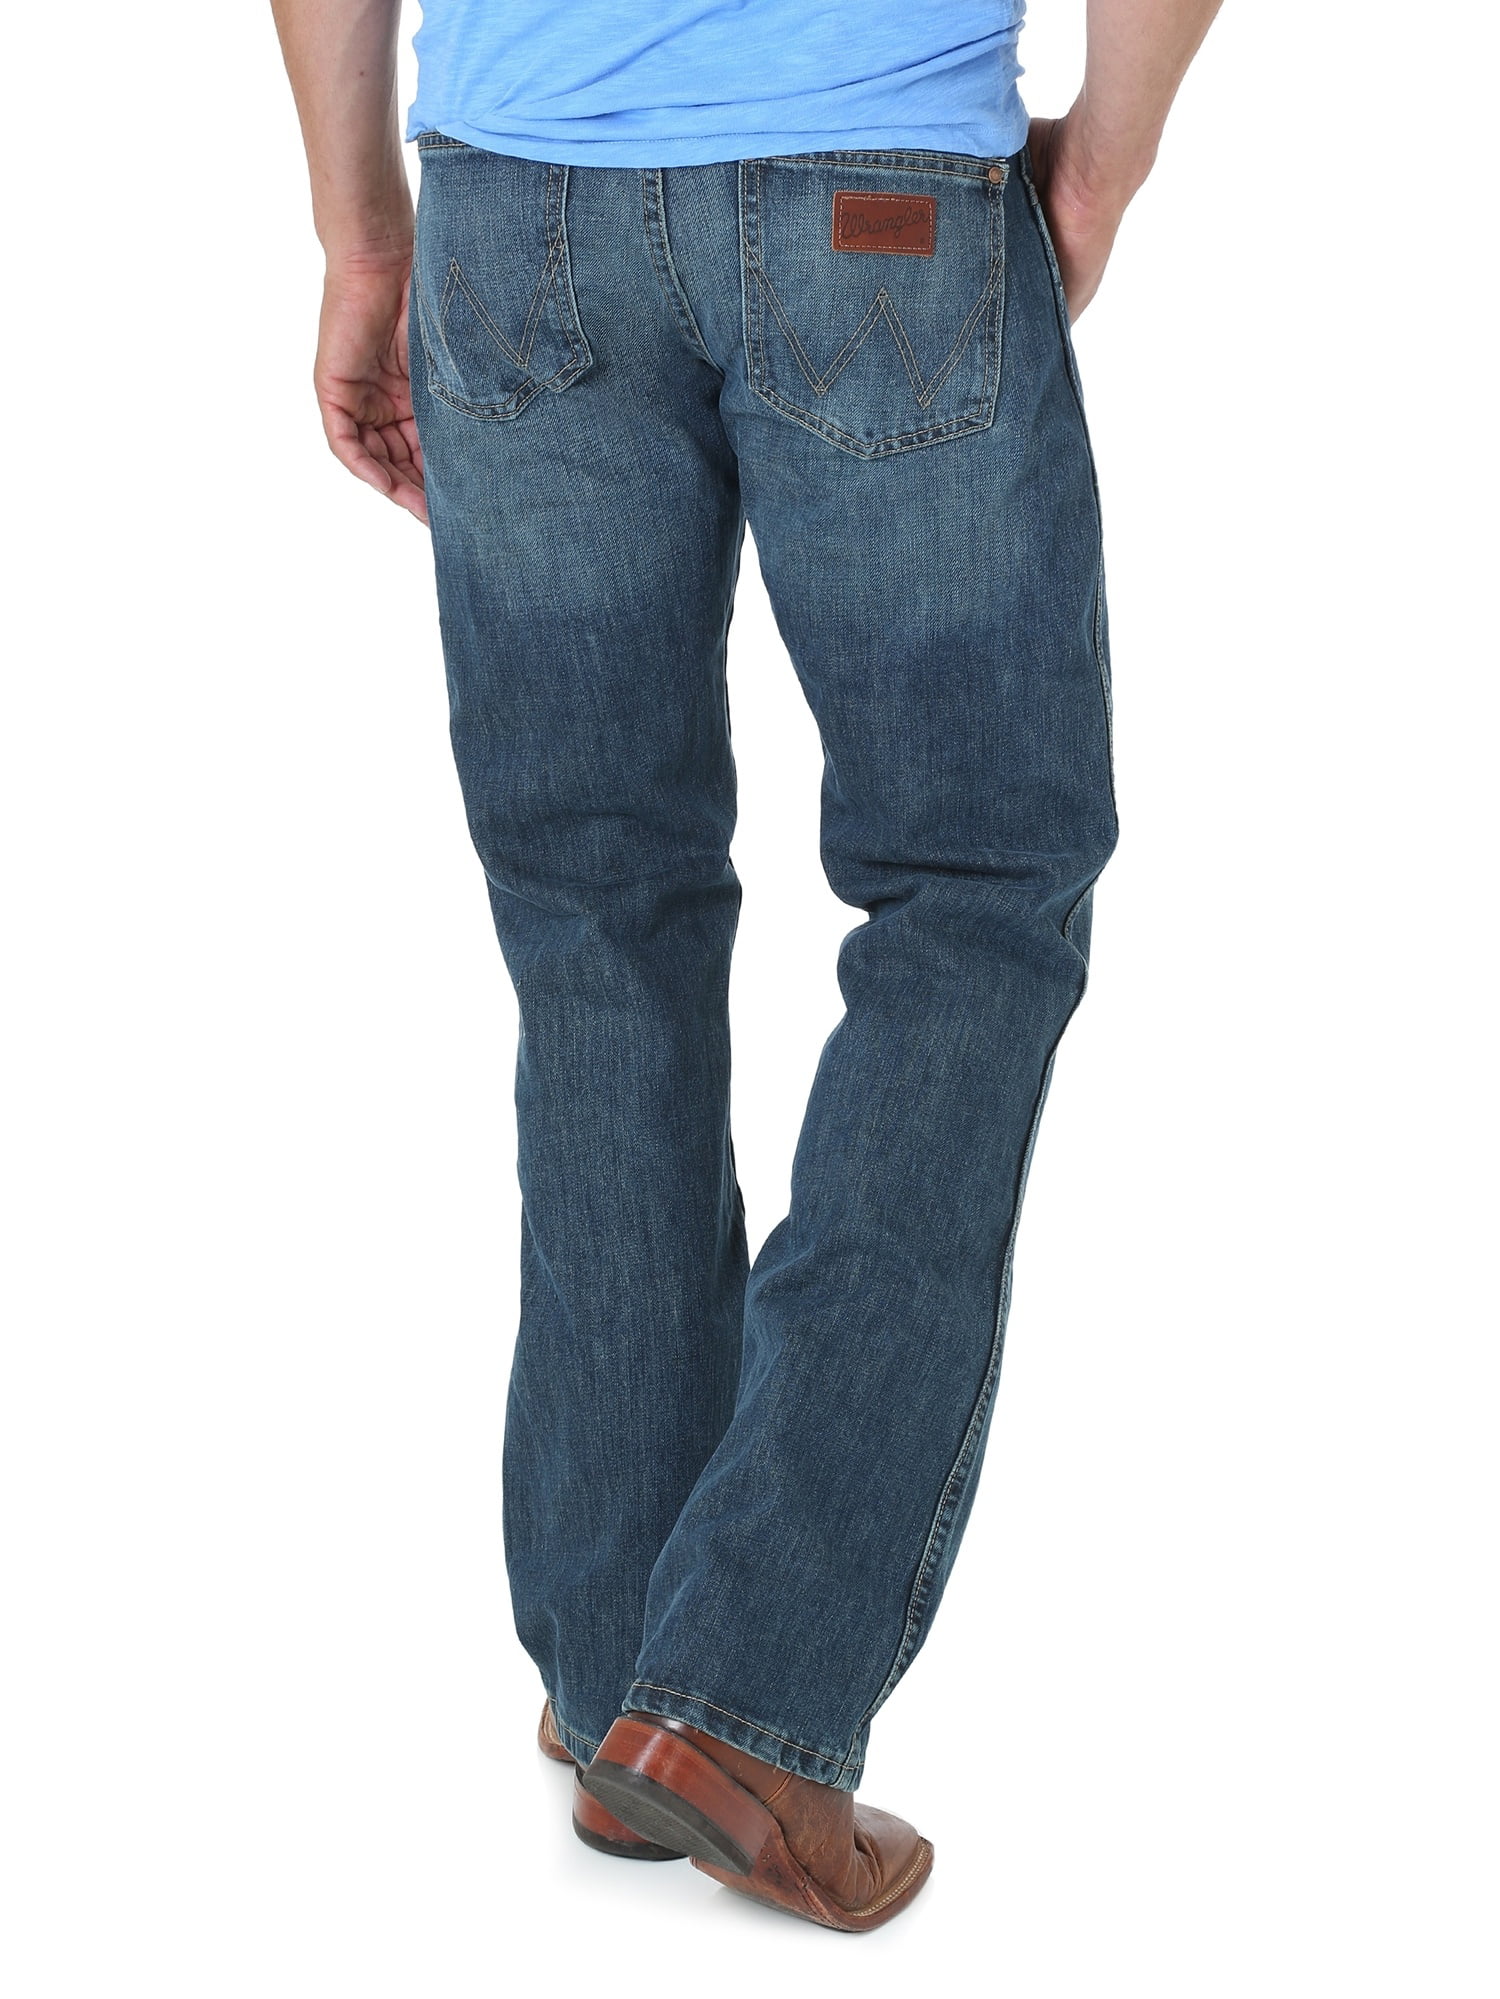 jason aldean wrangler jeans